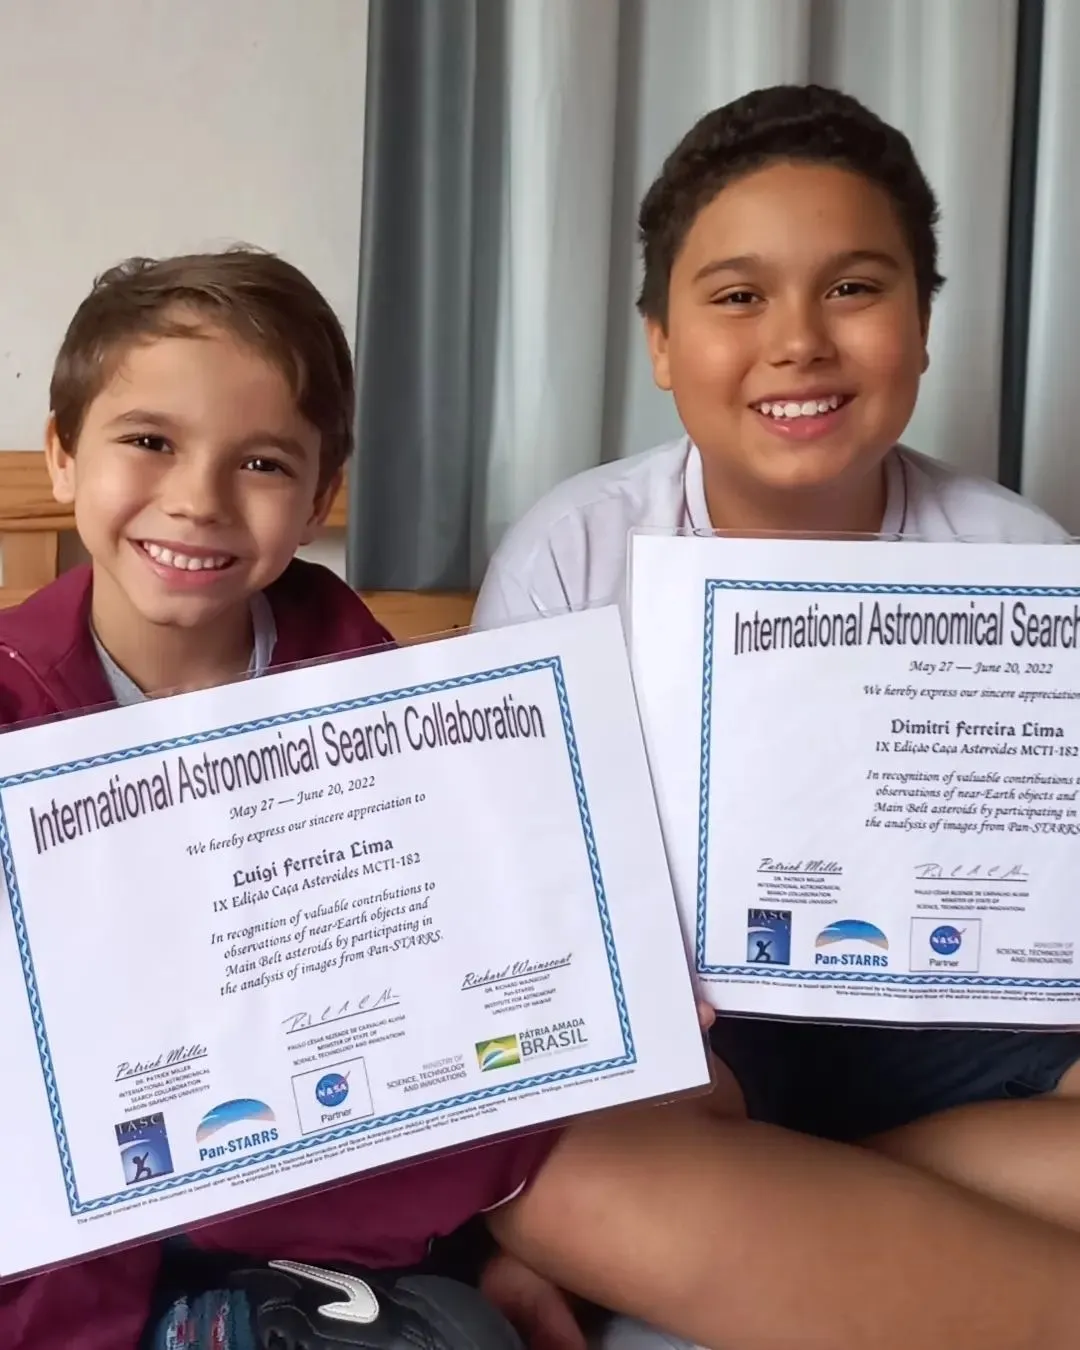 Luigi e Dimitri com certificado internacional do programa CAÇA ASTEROIDES MCTI em parceria com o IASC e a NASA